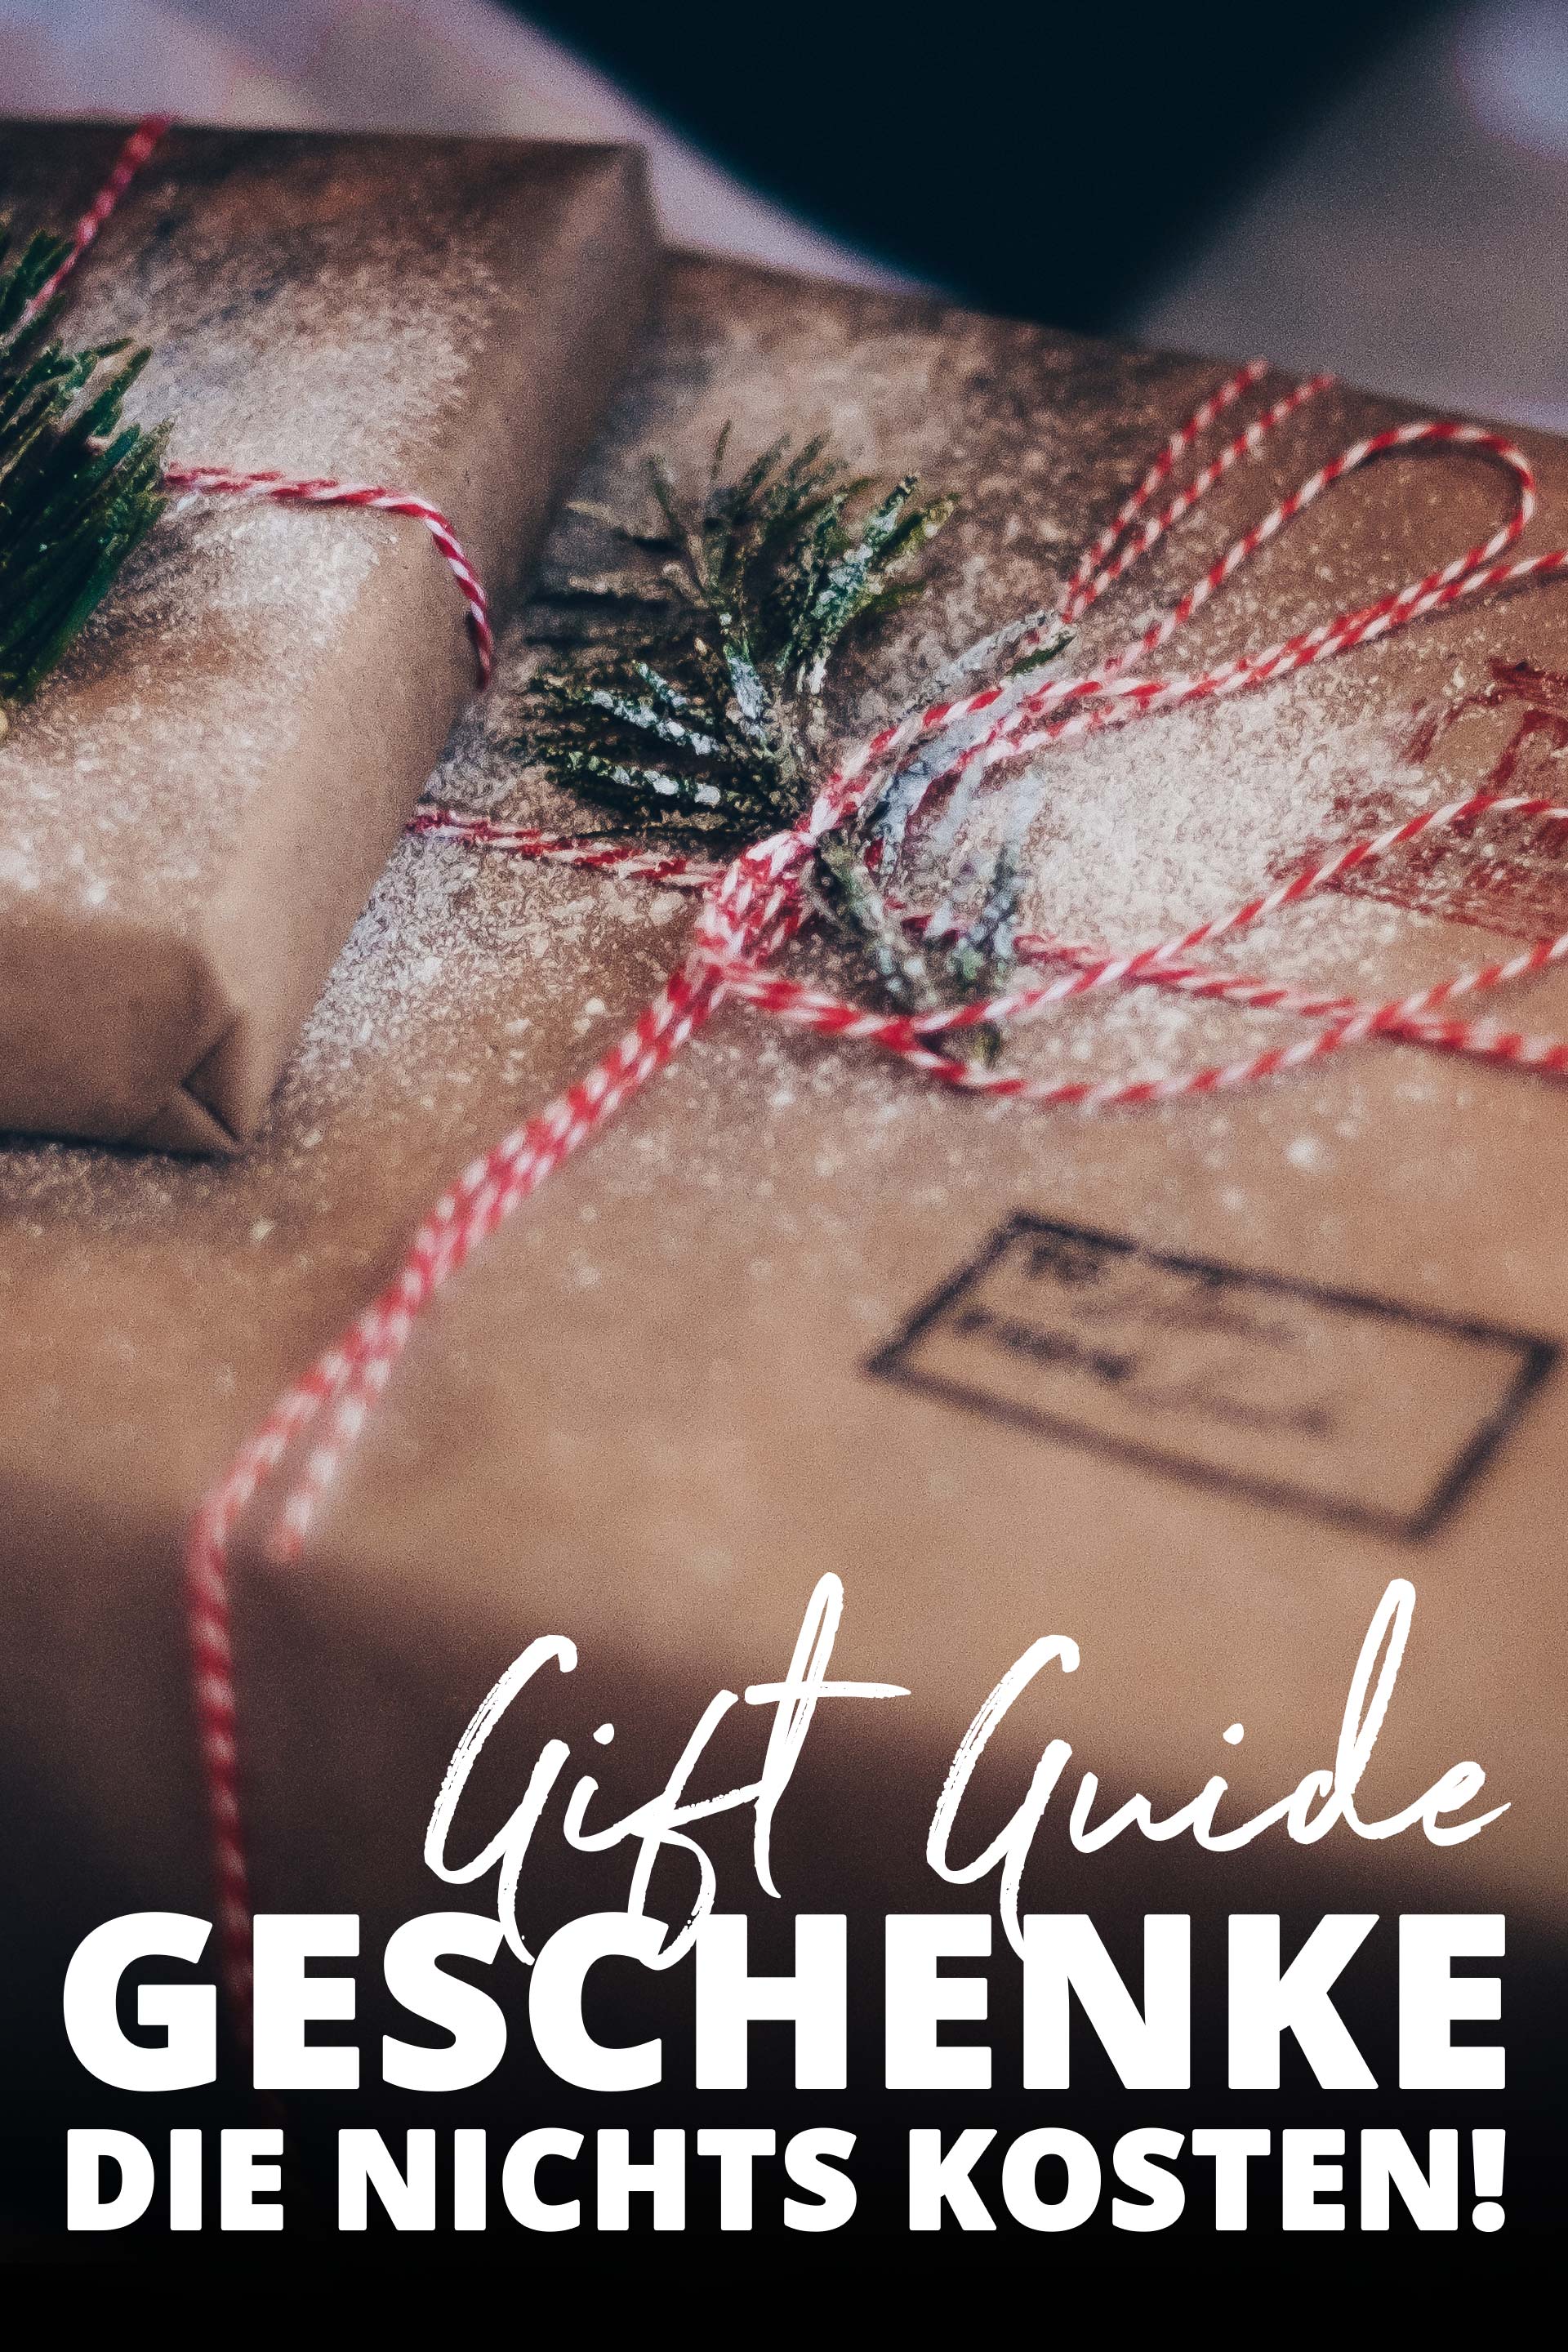 Geschenke die nichts kosten, Geschenke zum selber machen, Geschenke die von Herzen kommen, Ideen für Weihnachtsgeschenke, Was soll ich zu Weihnachten schenken, Gift Guide, Style Blog, www.whoismocca.com